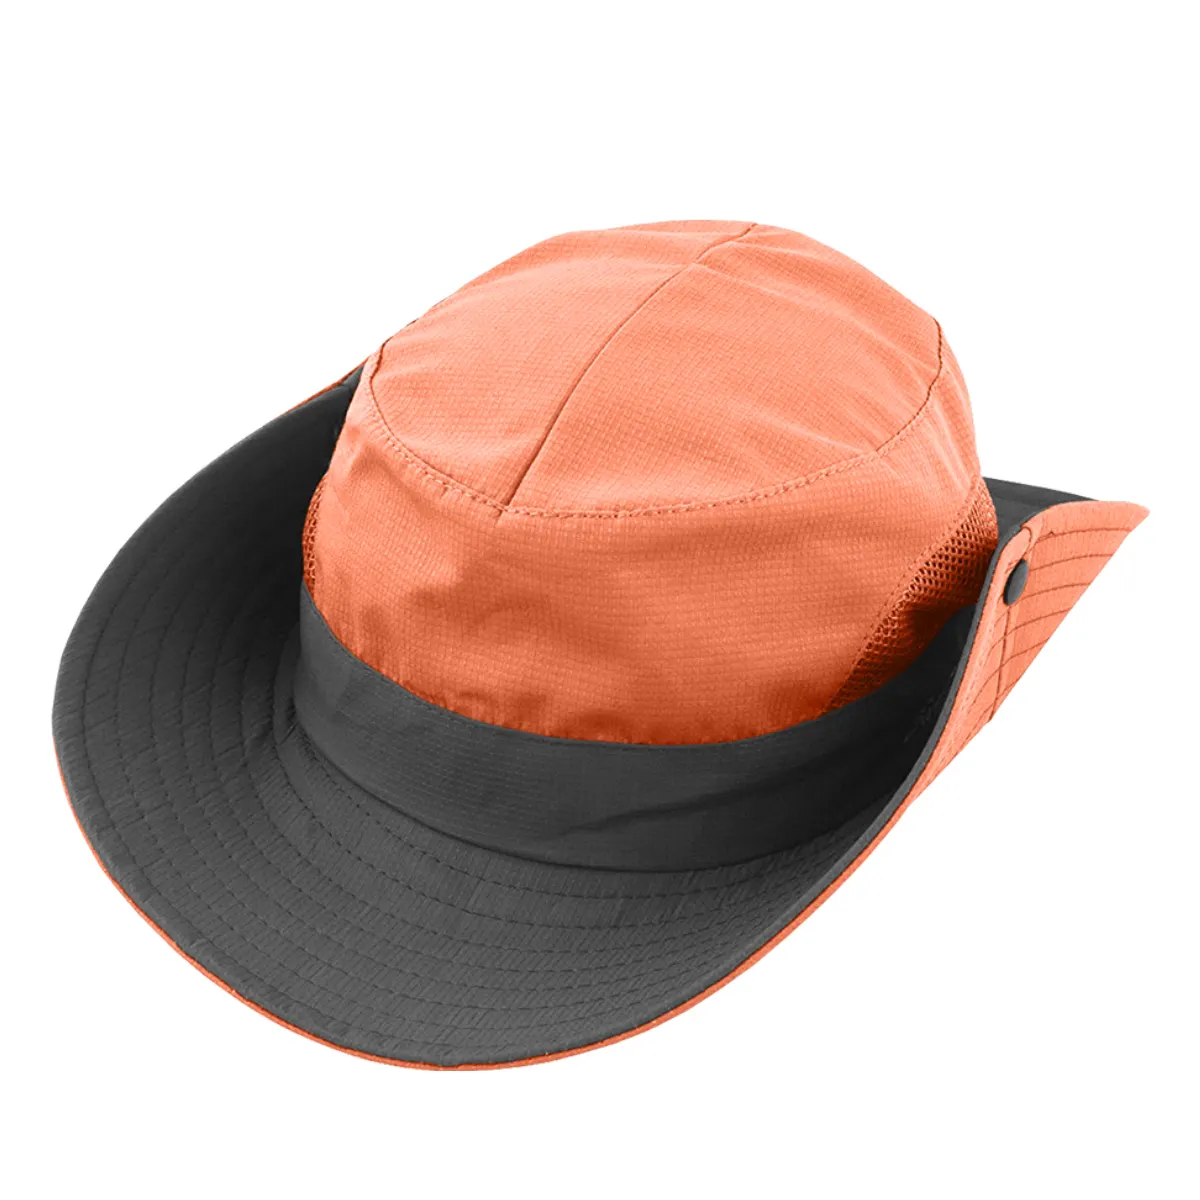 포니 테일 구멍이있는 여성 태양 모자 넓은 챙 UV 보호 비치 모자 낚시 하이킹 원예